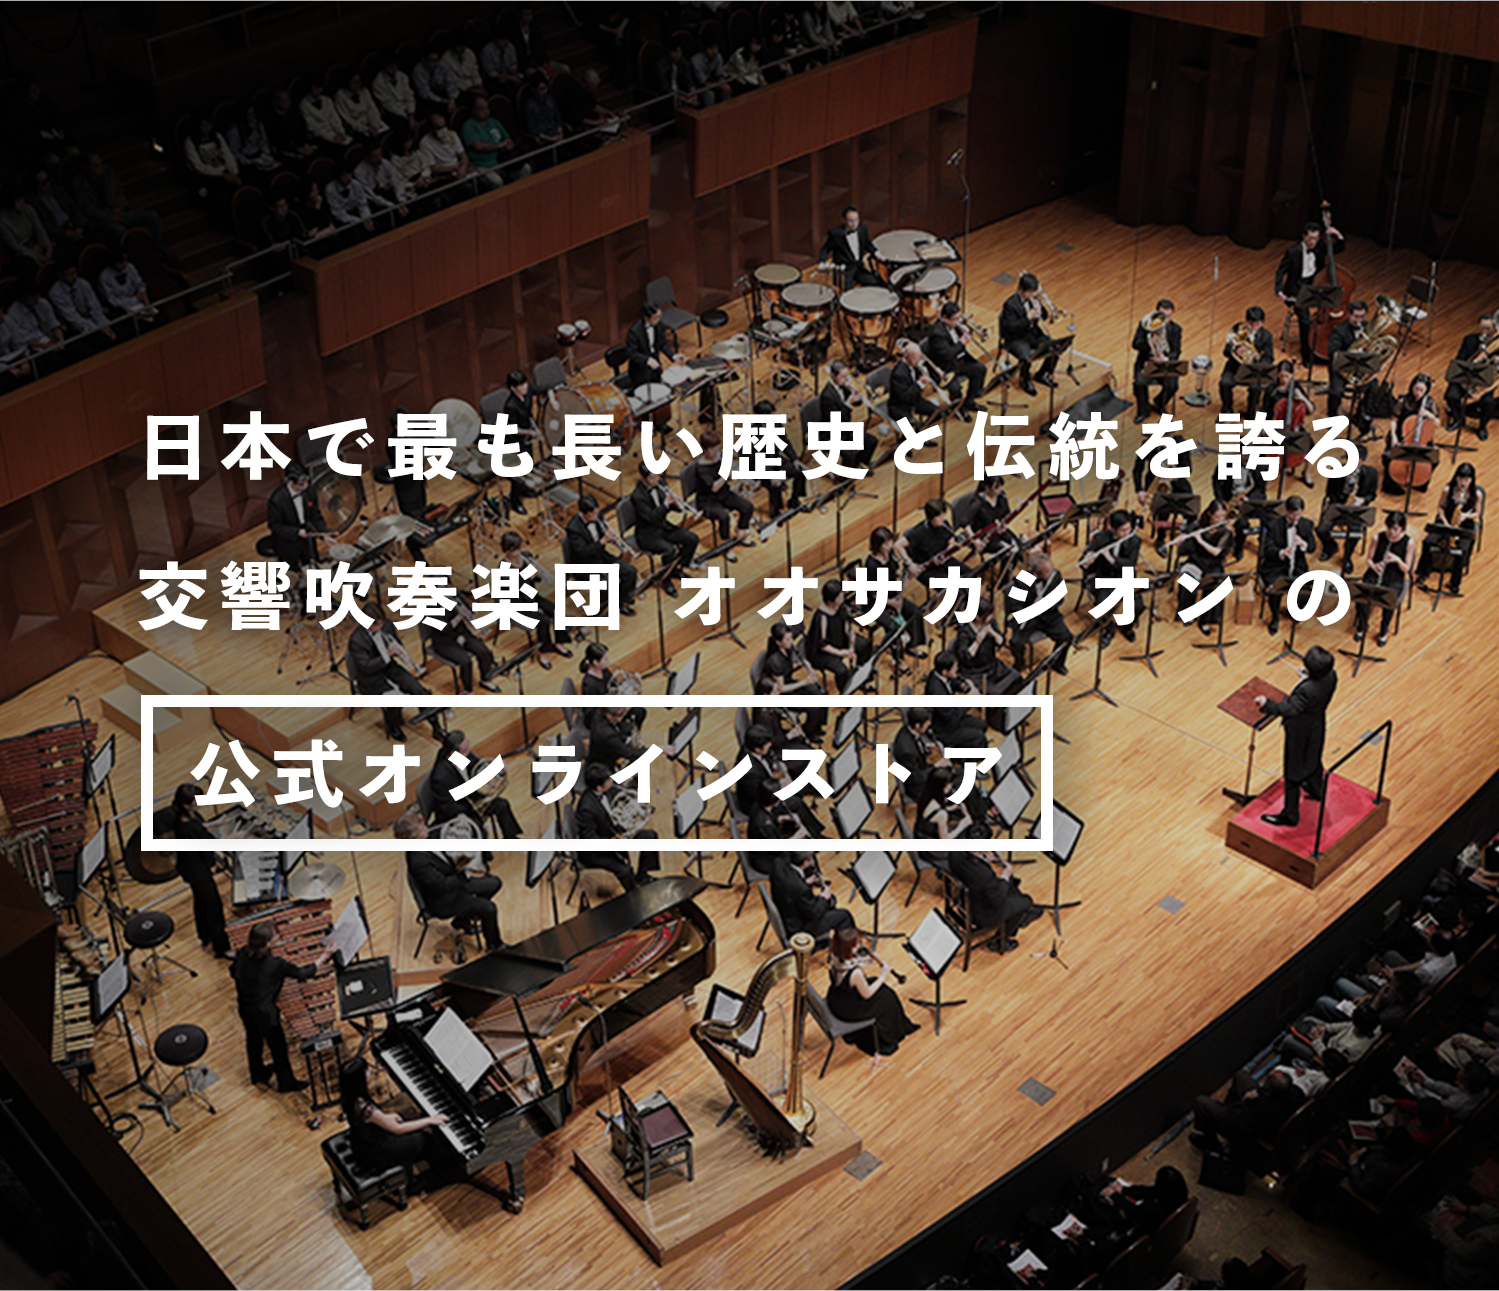 Osaka Shion Wind Orchestra 公式オンラインショップを開設しました！